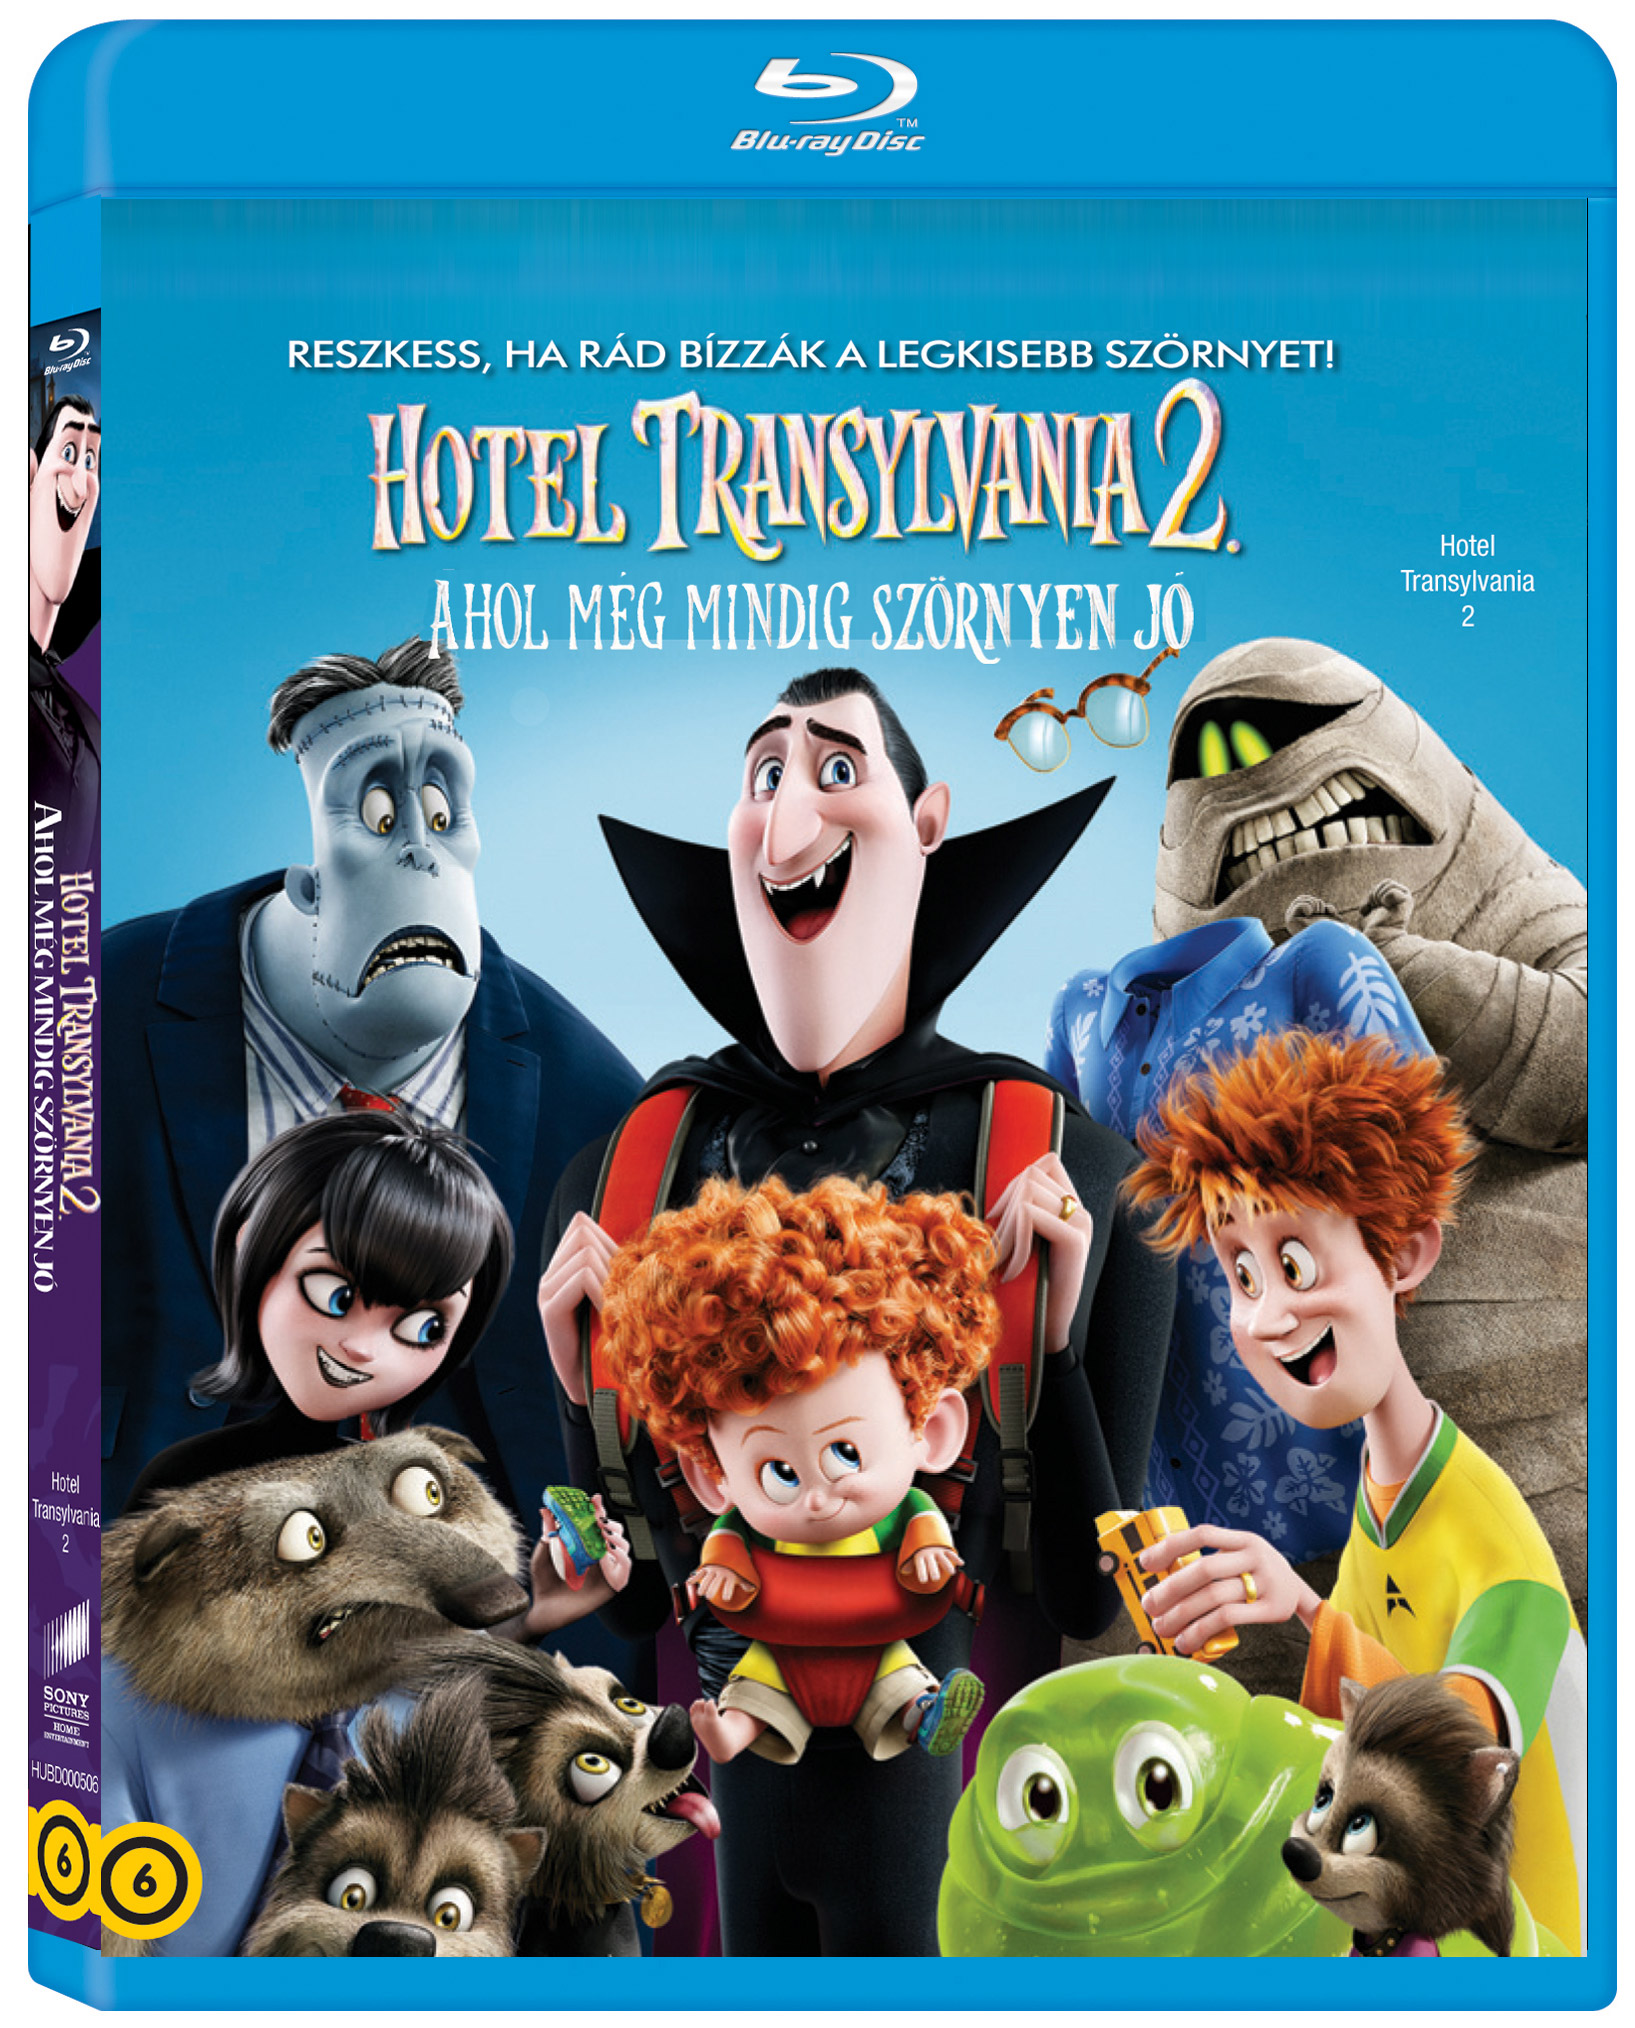 Hotel Transylvania 2: Ahol még mindig szörnyen jó Blu-ray